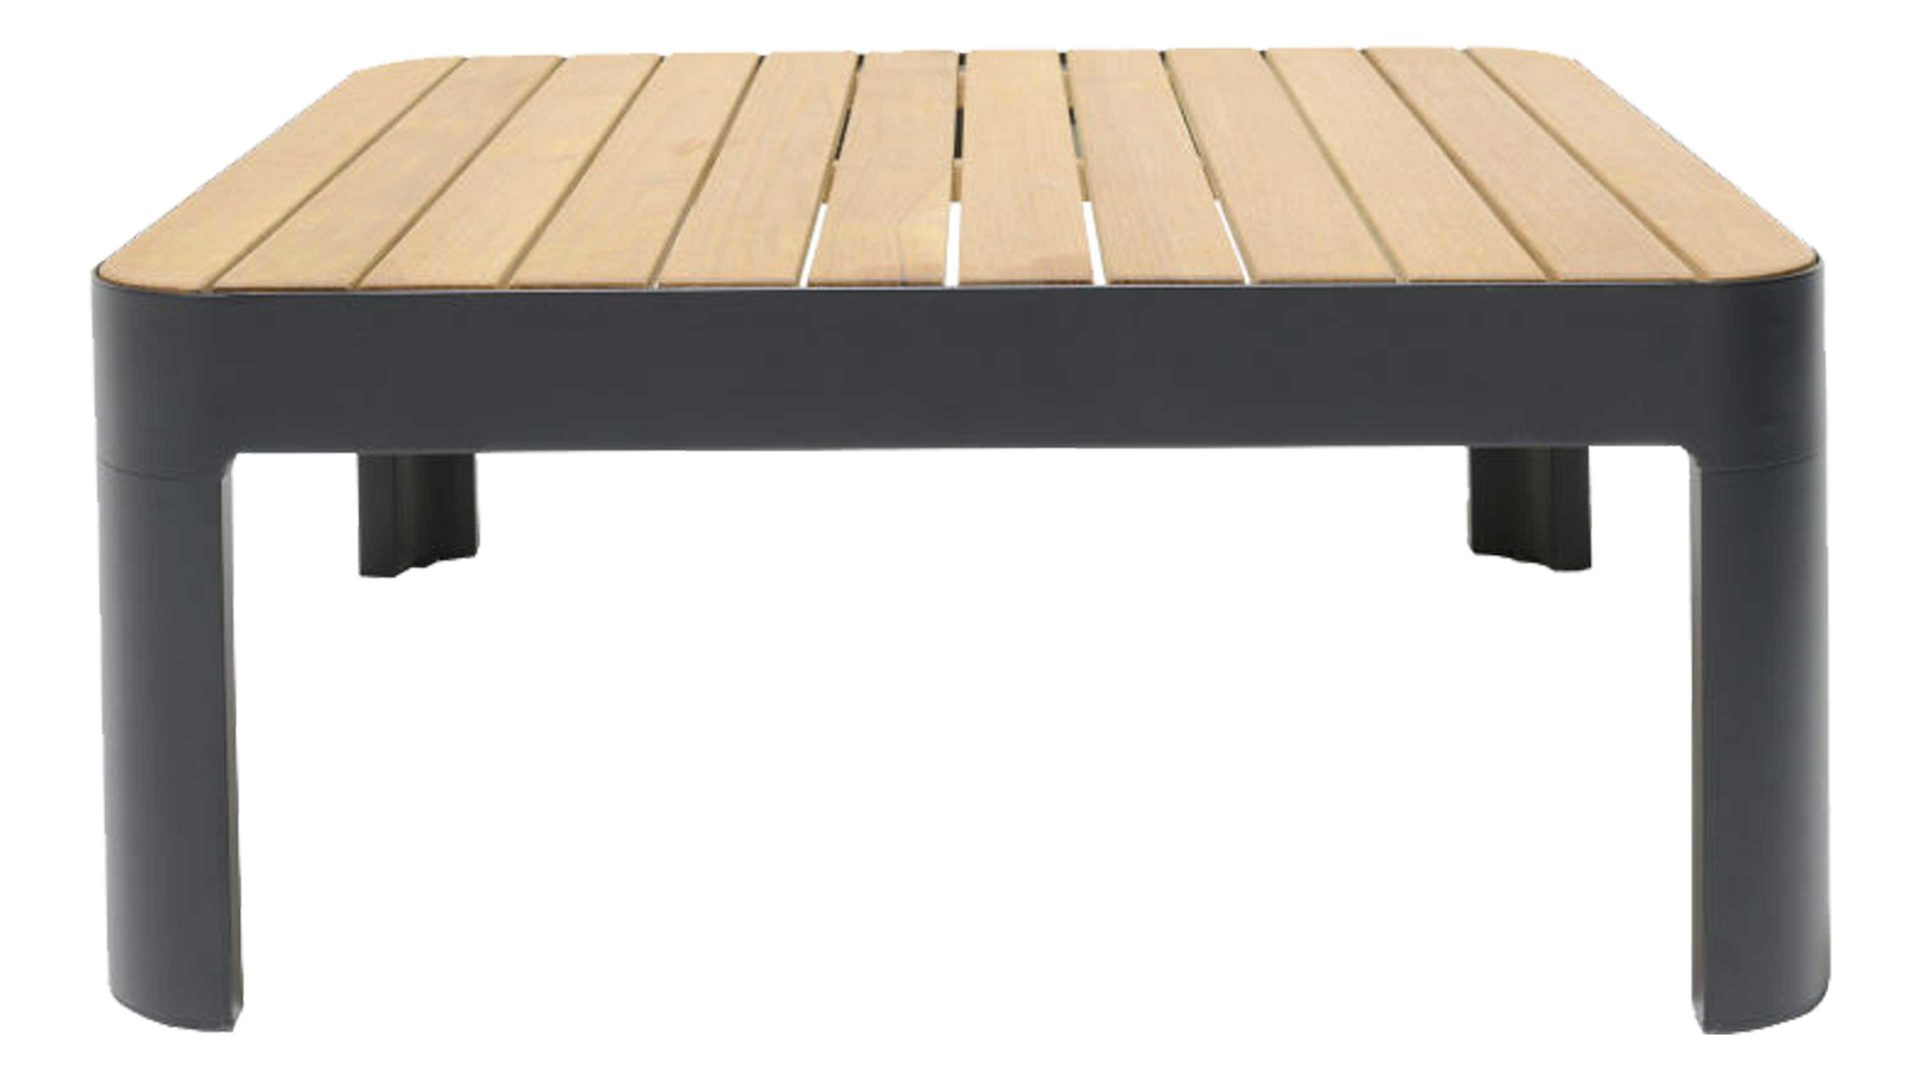 Gartentisch Scancom aus Holz in Holzfarben LifestyleGarden® Loungemöbel-Serie Portals - Couchtisch Teakholz & schwarzes Aluminium - ca. 72 x 72 cm